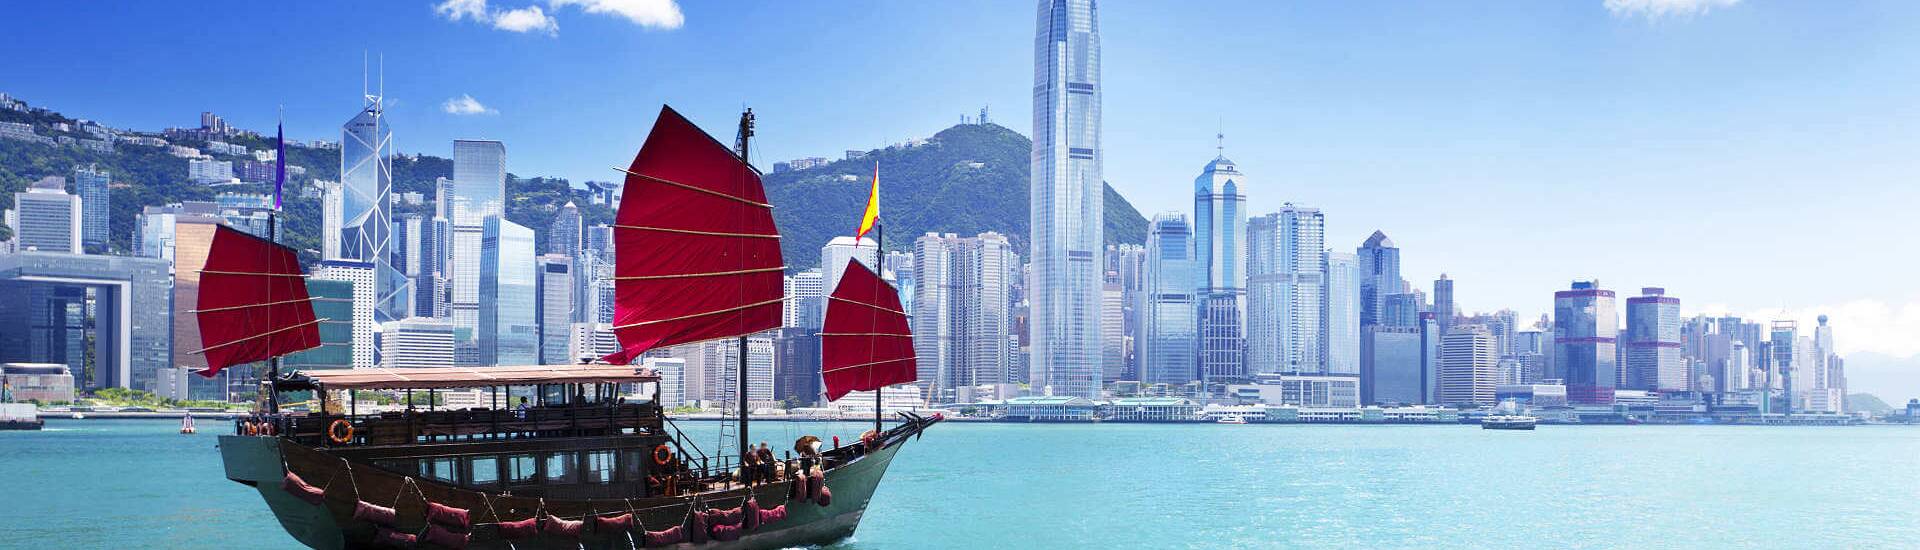 Hongkong mit Wolkenkratzern mit Berglandschaft und im Vordergrund eine Dschunke.